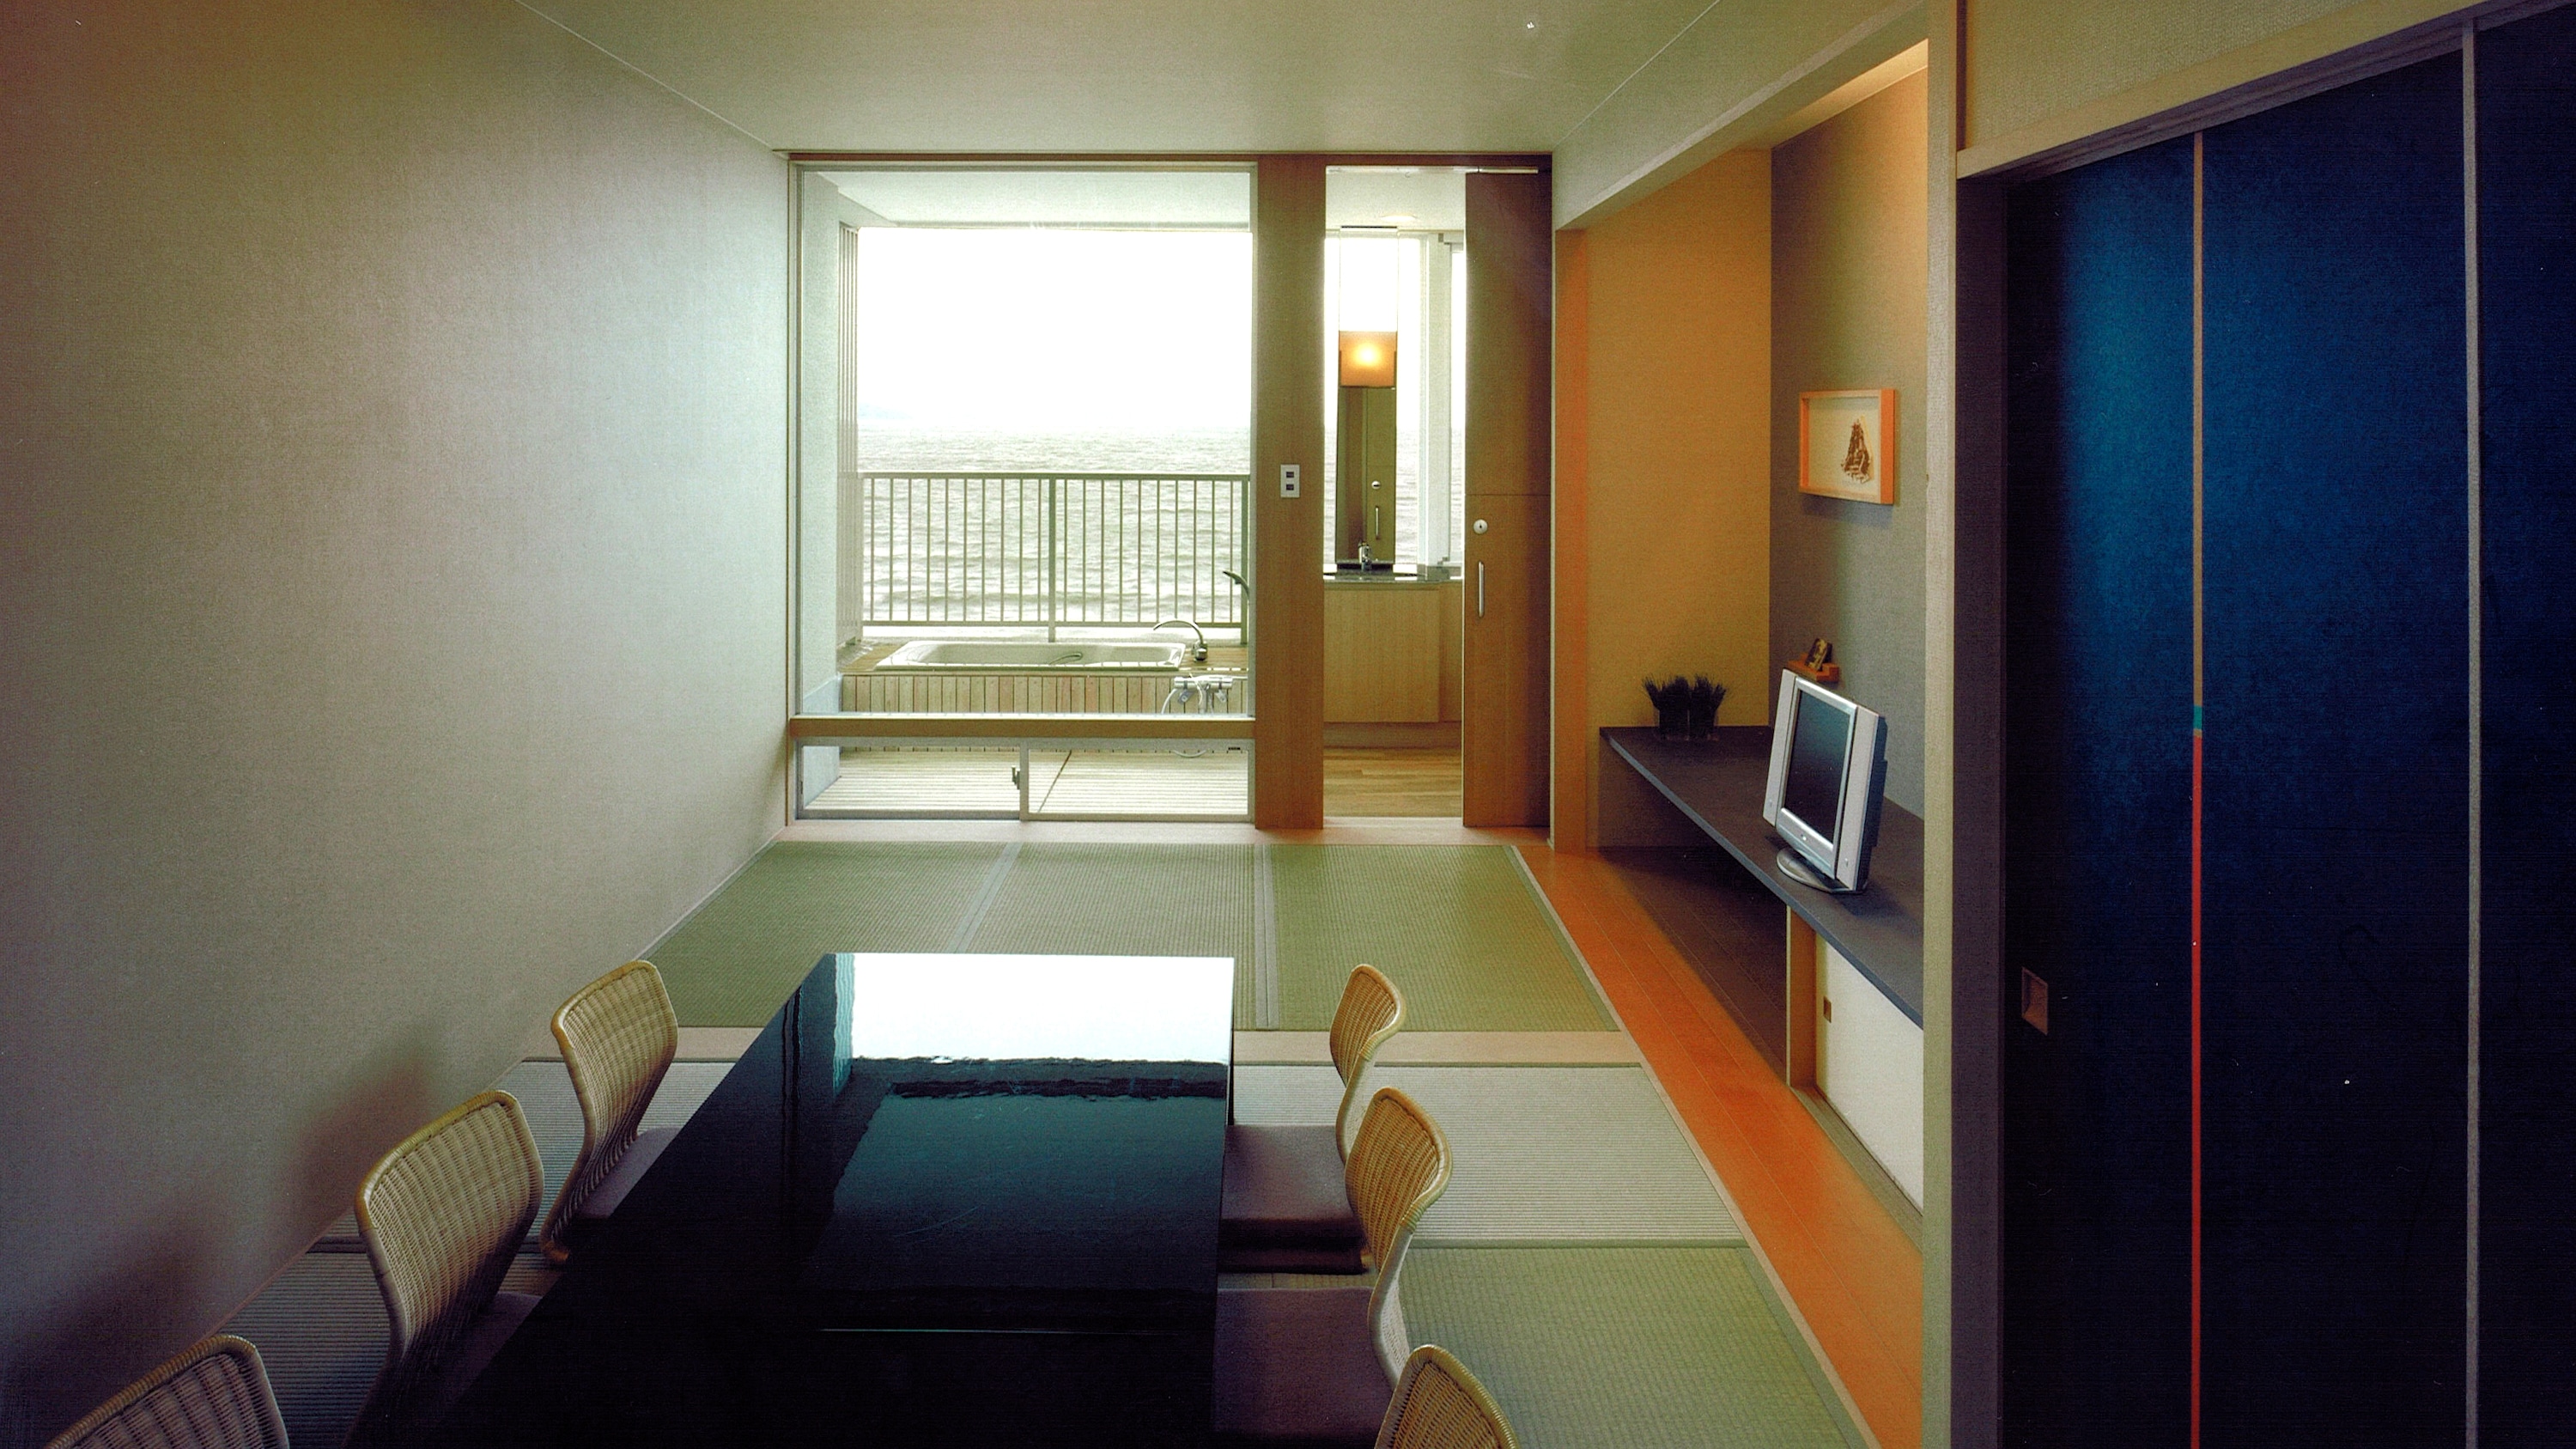 【방】몰러 저택 일본식 방/오션 프런트/베란다에 전망 목욕탕을 배치한 현대적인 일본식 방/금연